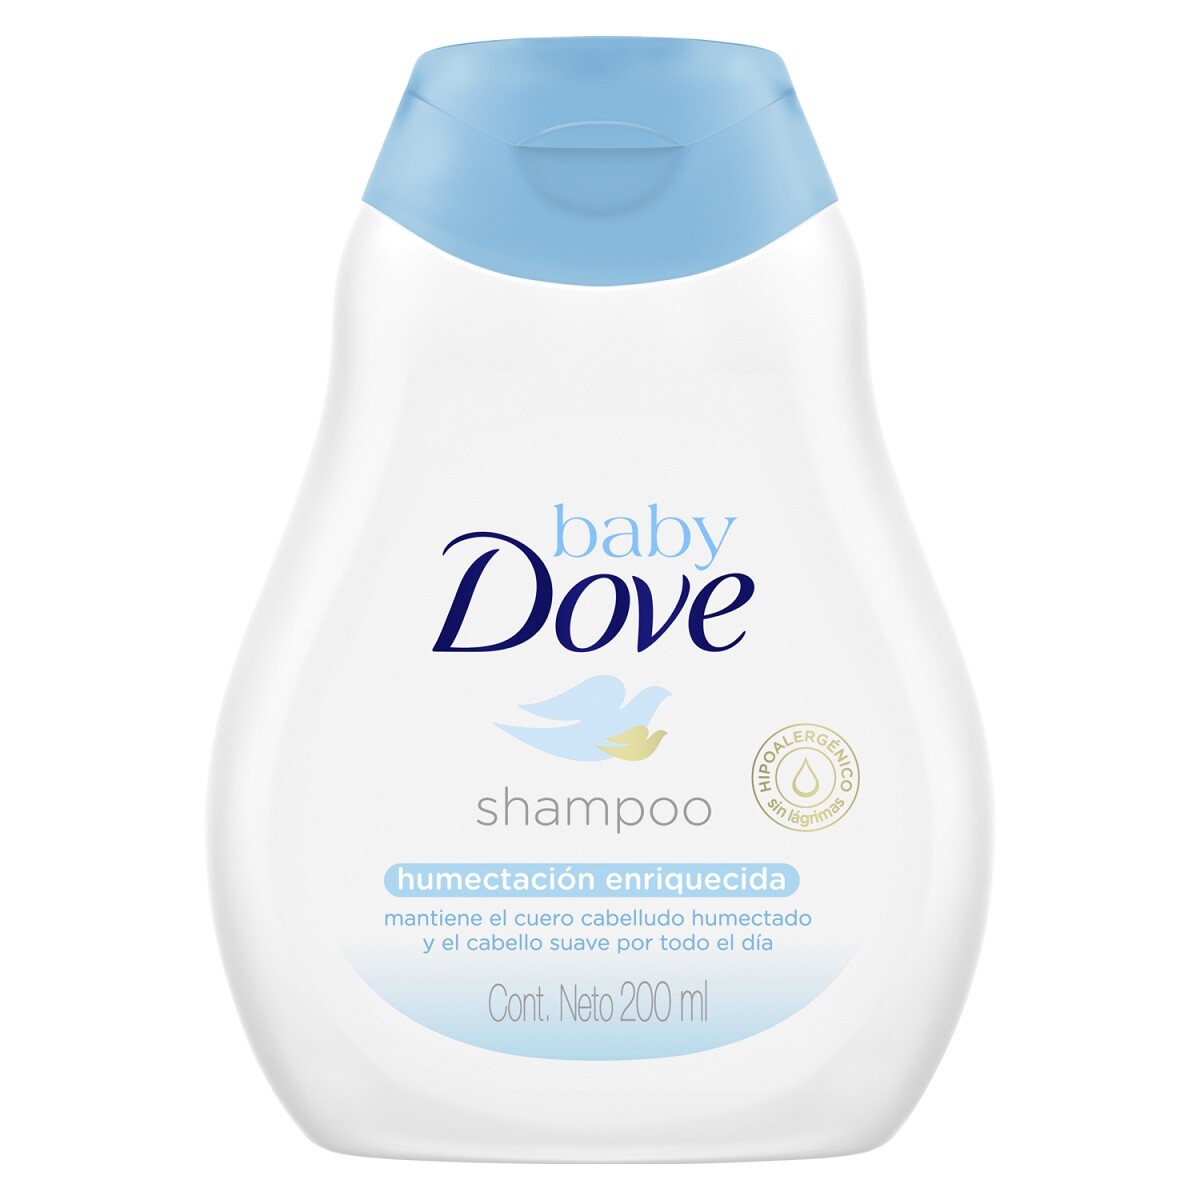 Shampoo Dove Baby Humectación Enriquecida 200 Ml. 